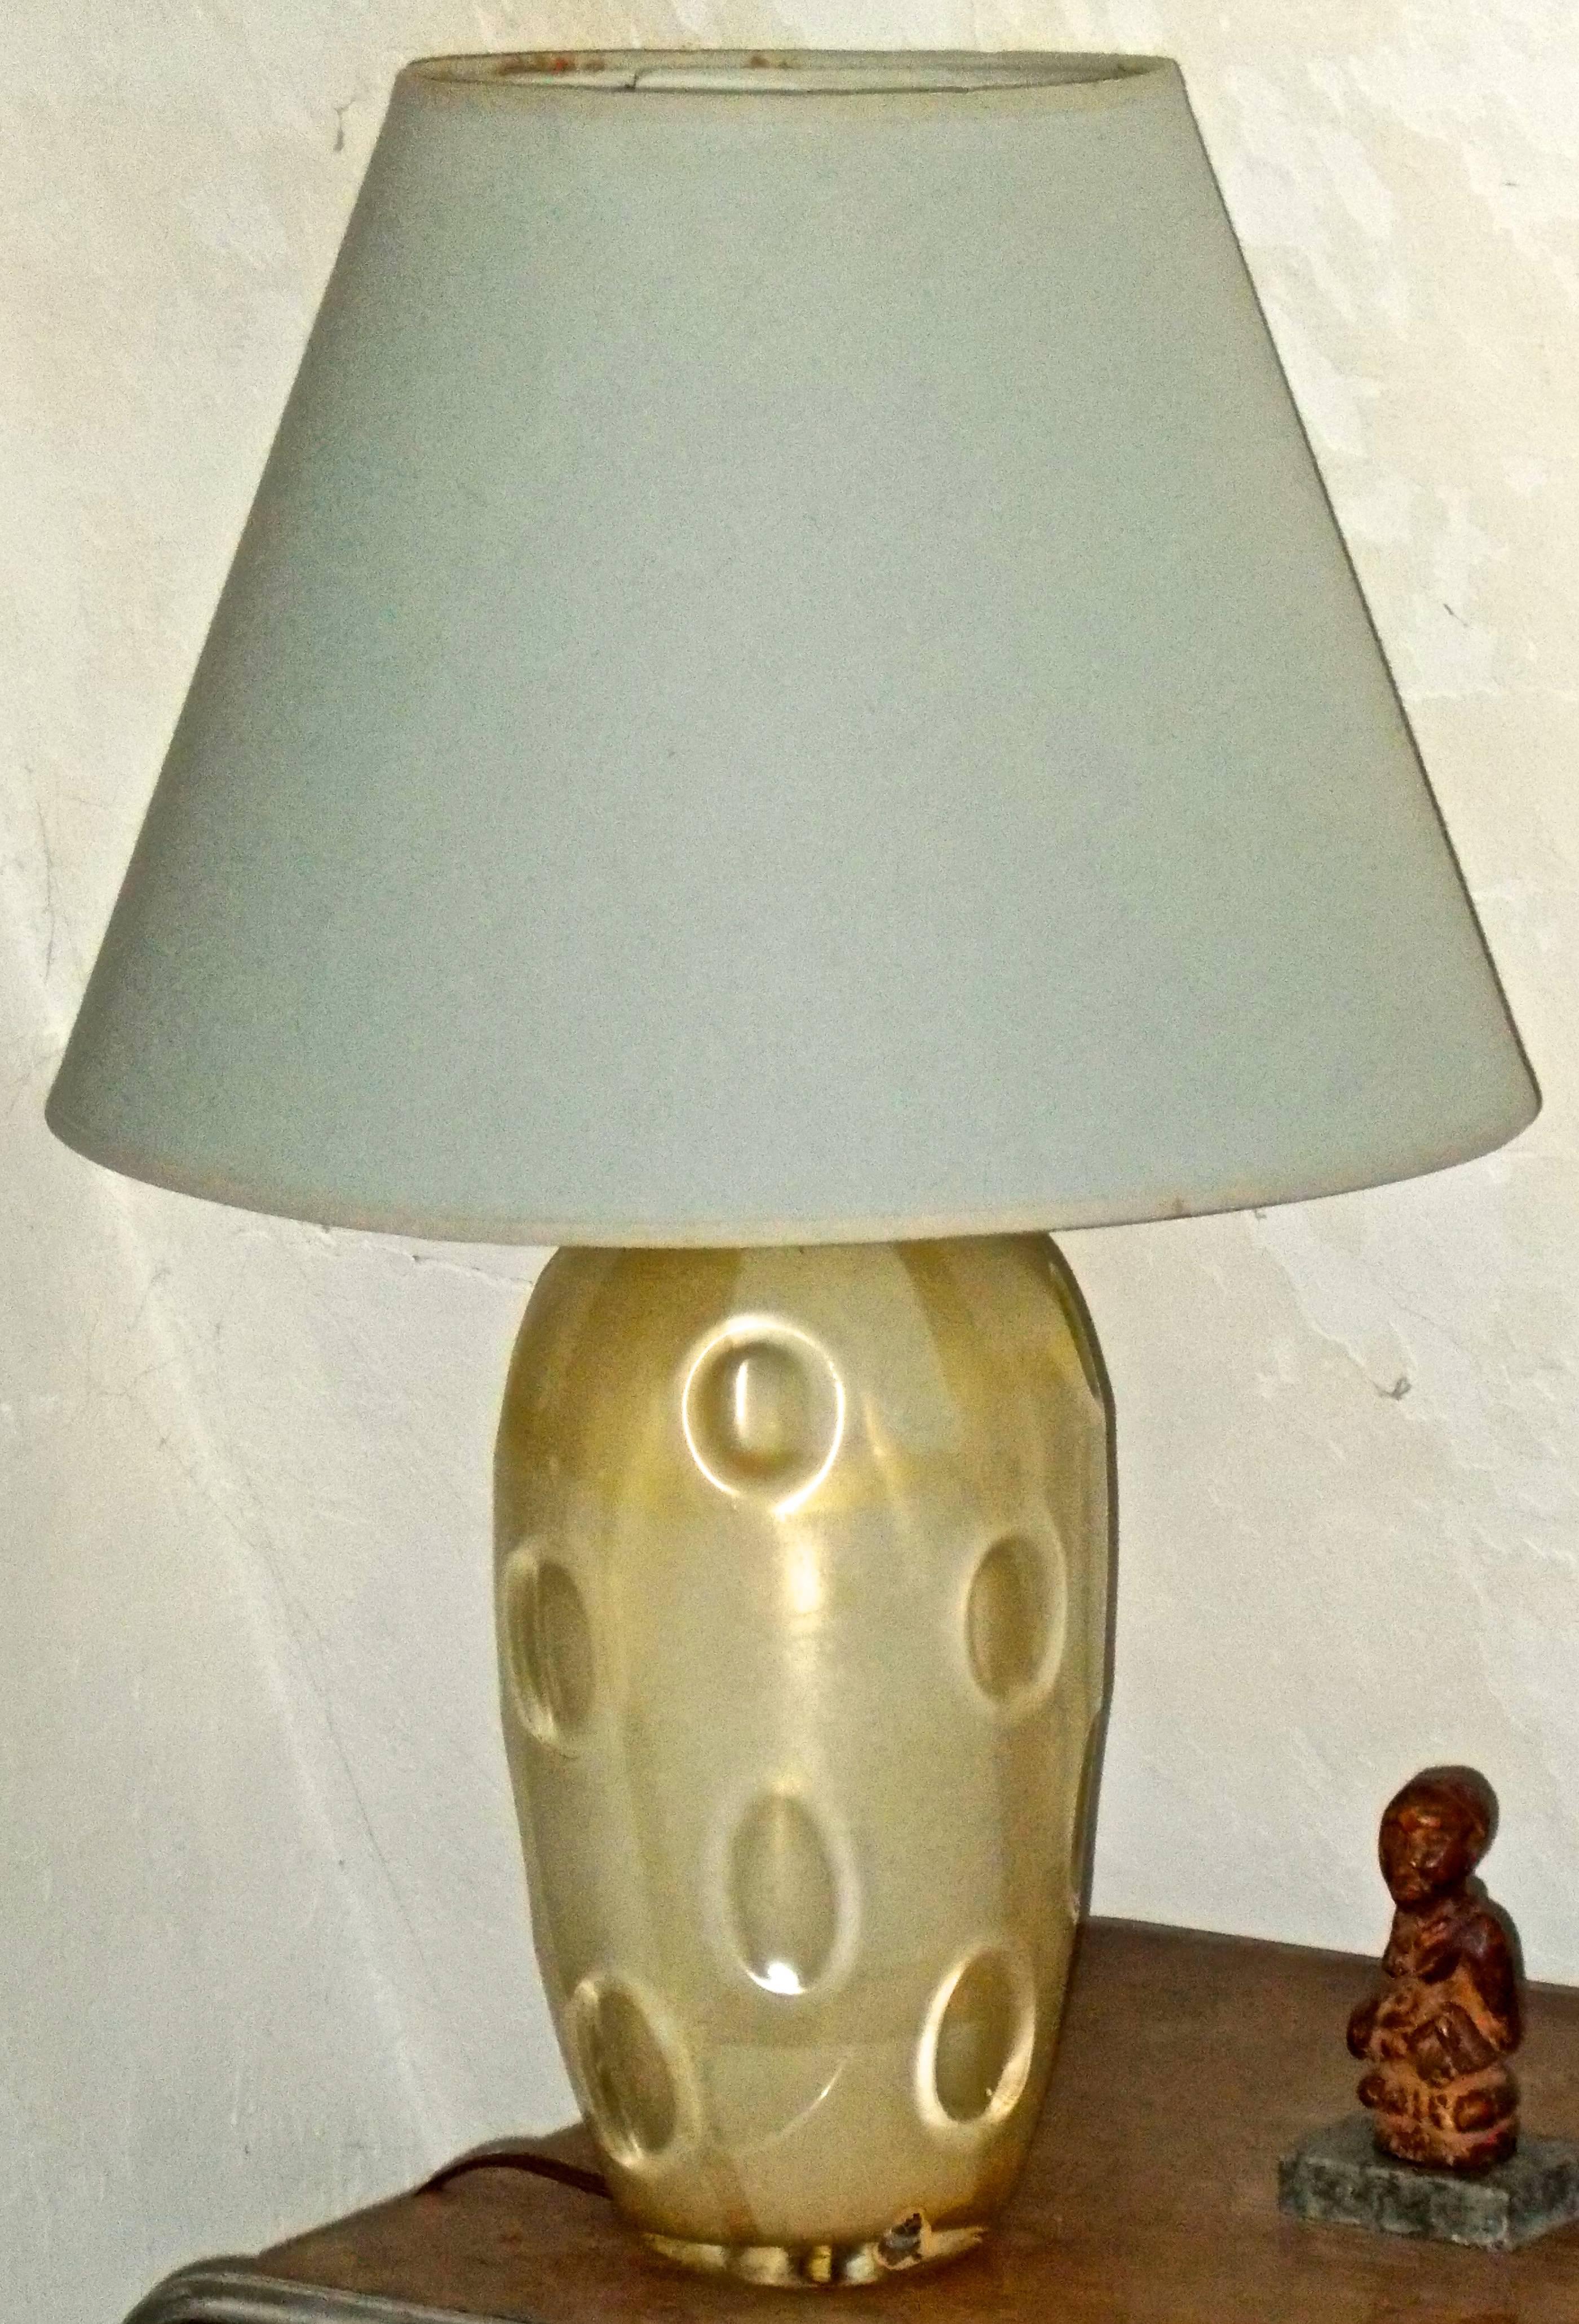 Un pied de lampe Vetri Mazzega (Vetrerie d'Arte-Romano Mazzega) de Murano, similaire en style et en technique à Carlo Scarpa. Signé avec une rare étiquette en feuille d'aluminium qui subsiste.